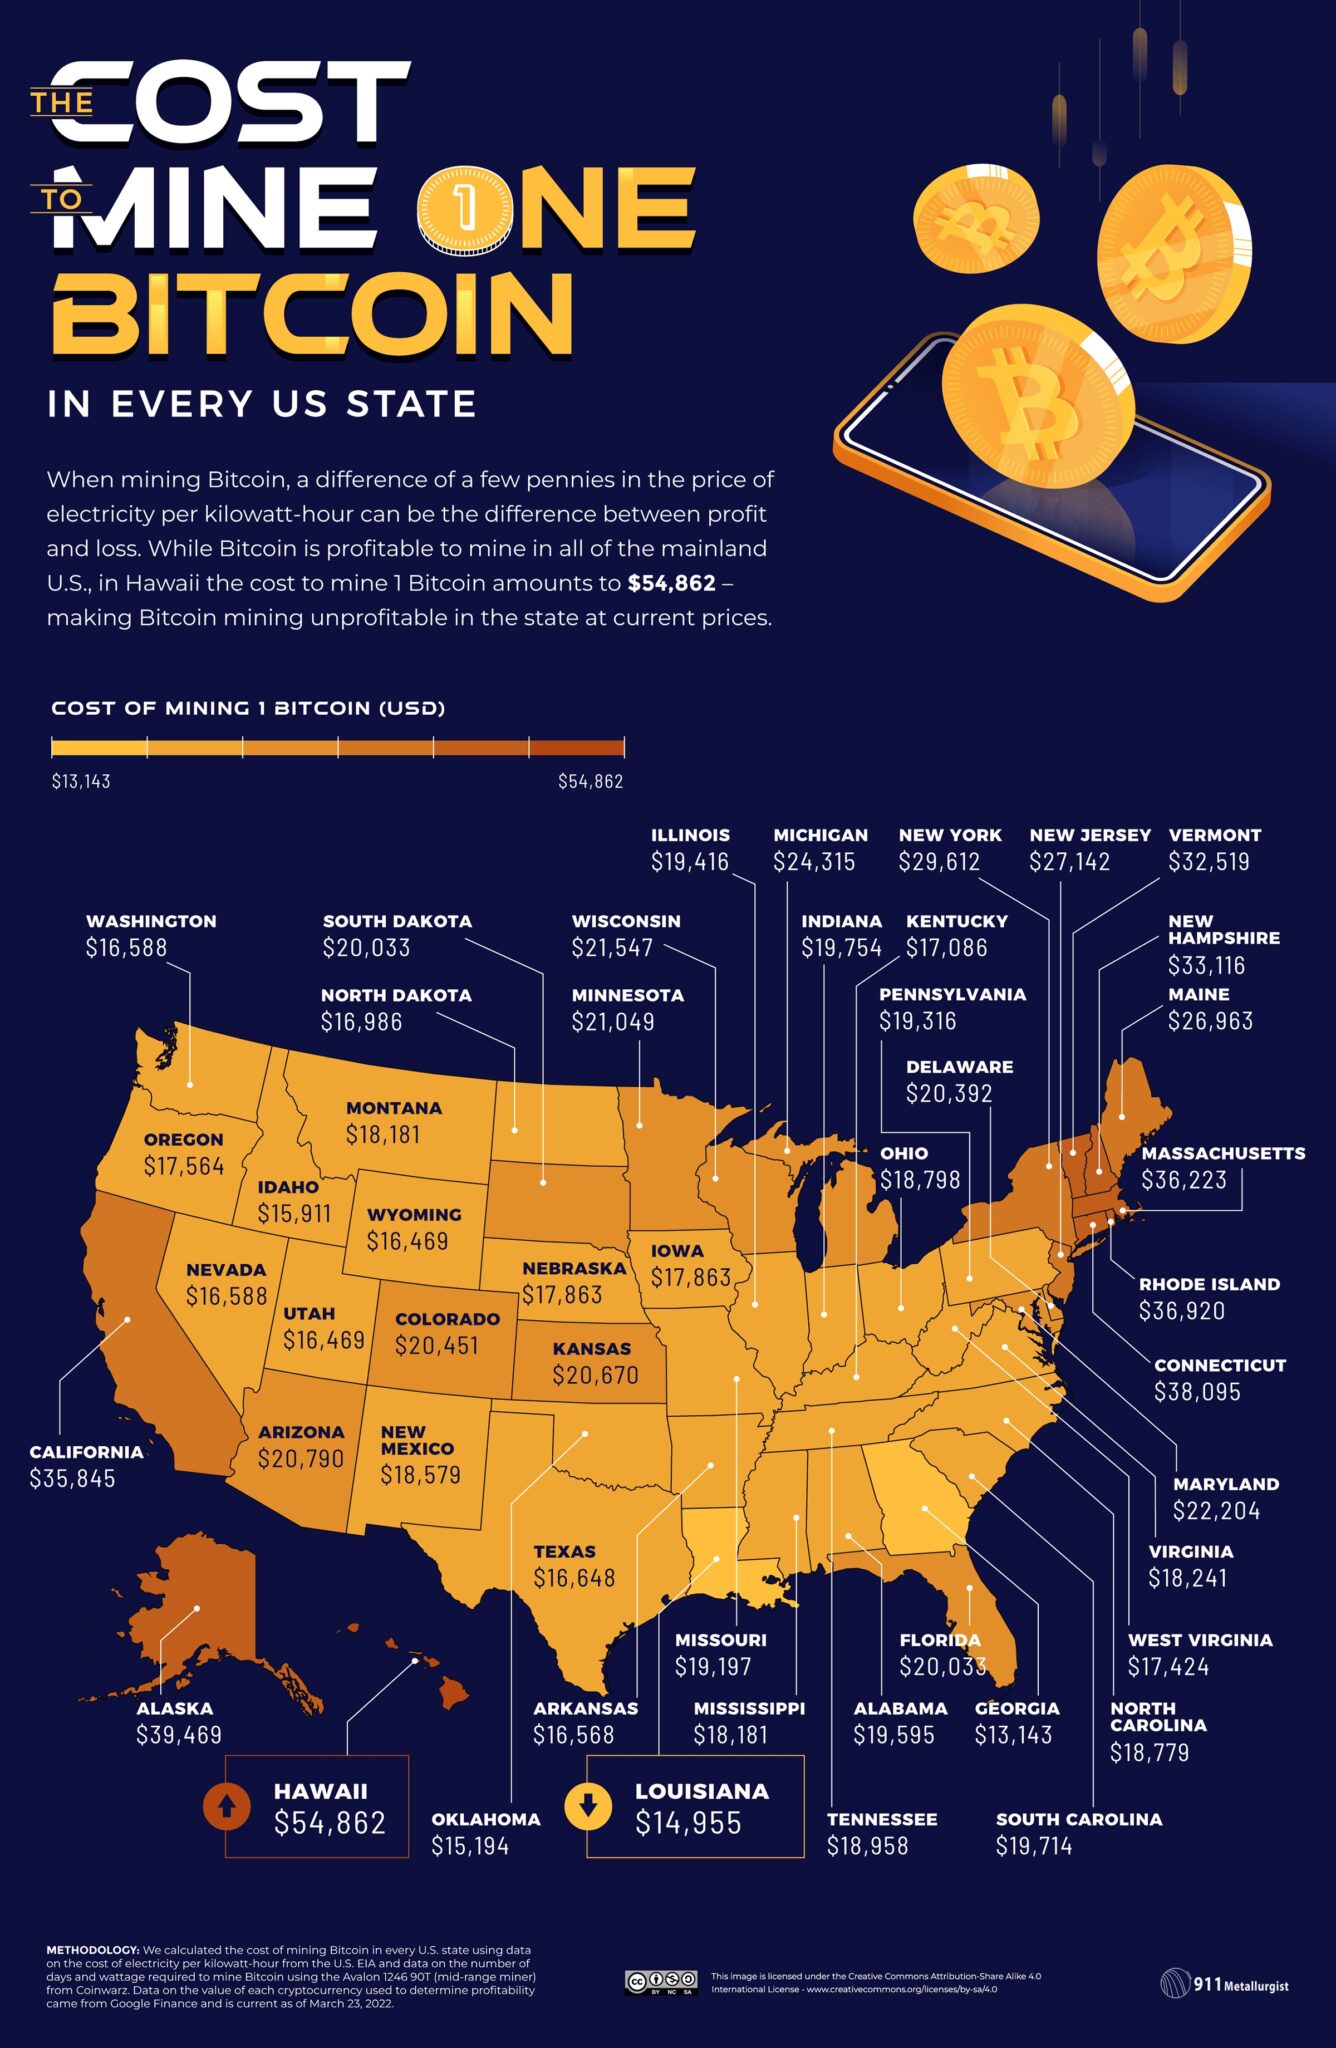 米国各州における1BTCの採掘コストを示すインフォグラフィック（出典：911 Metalurgist）